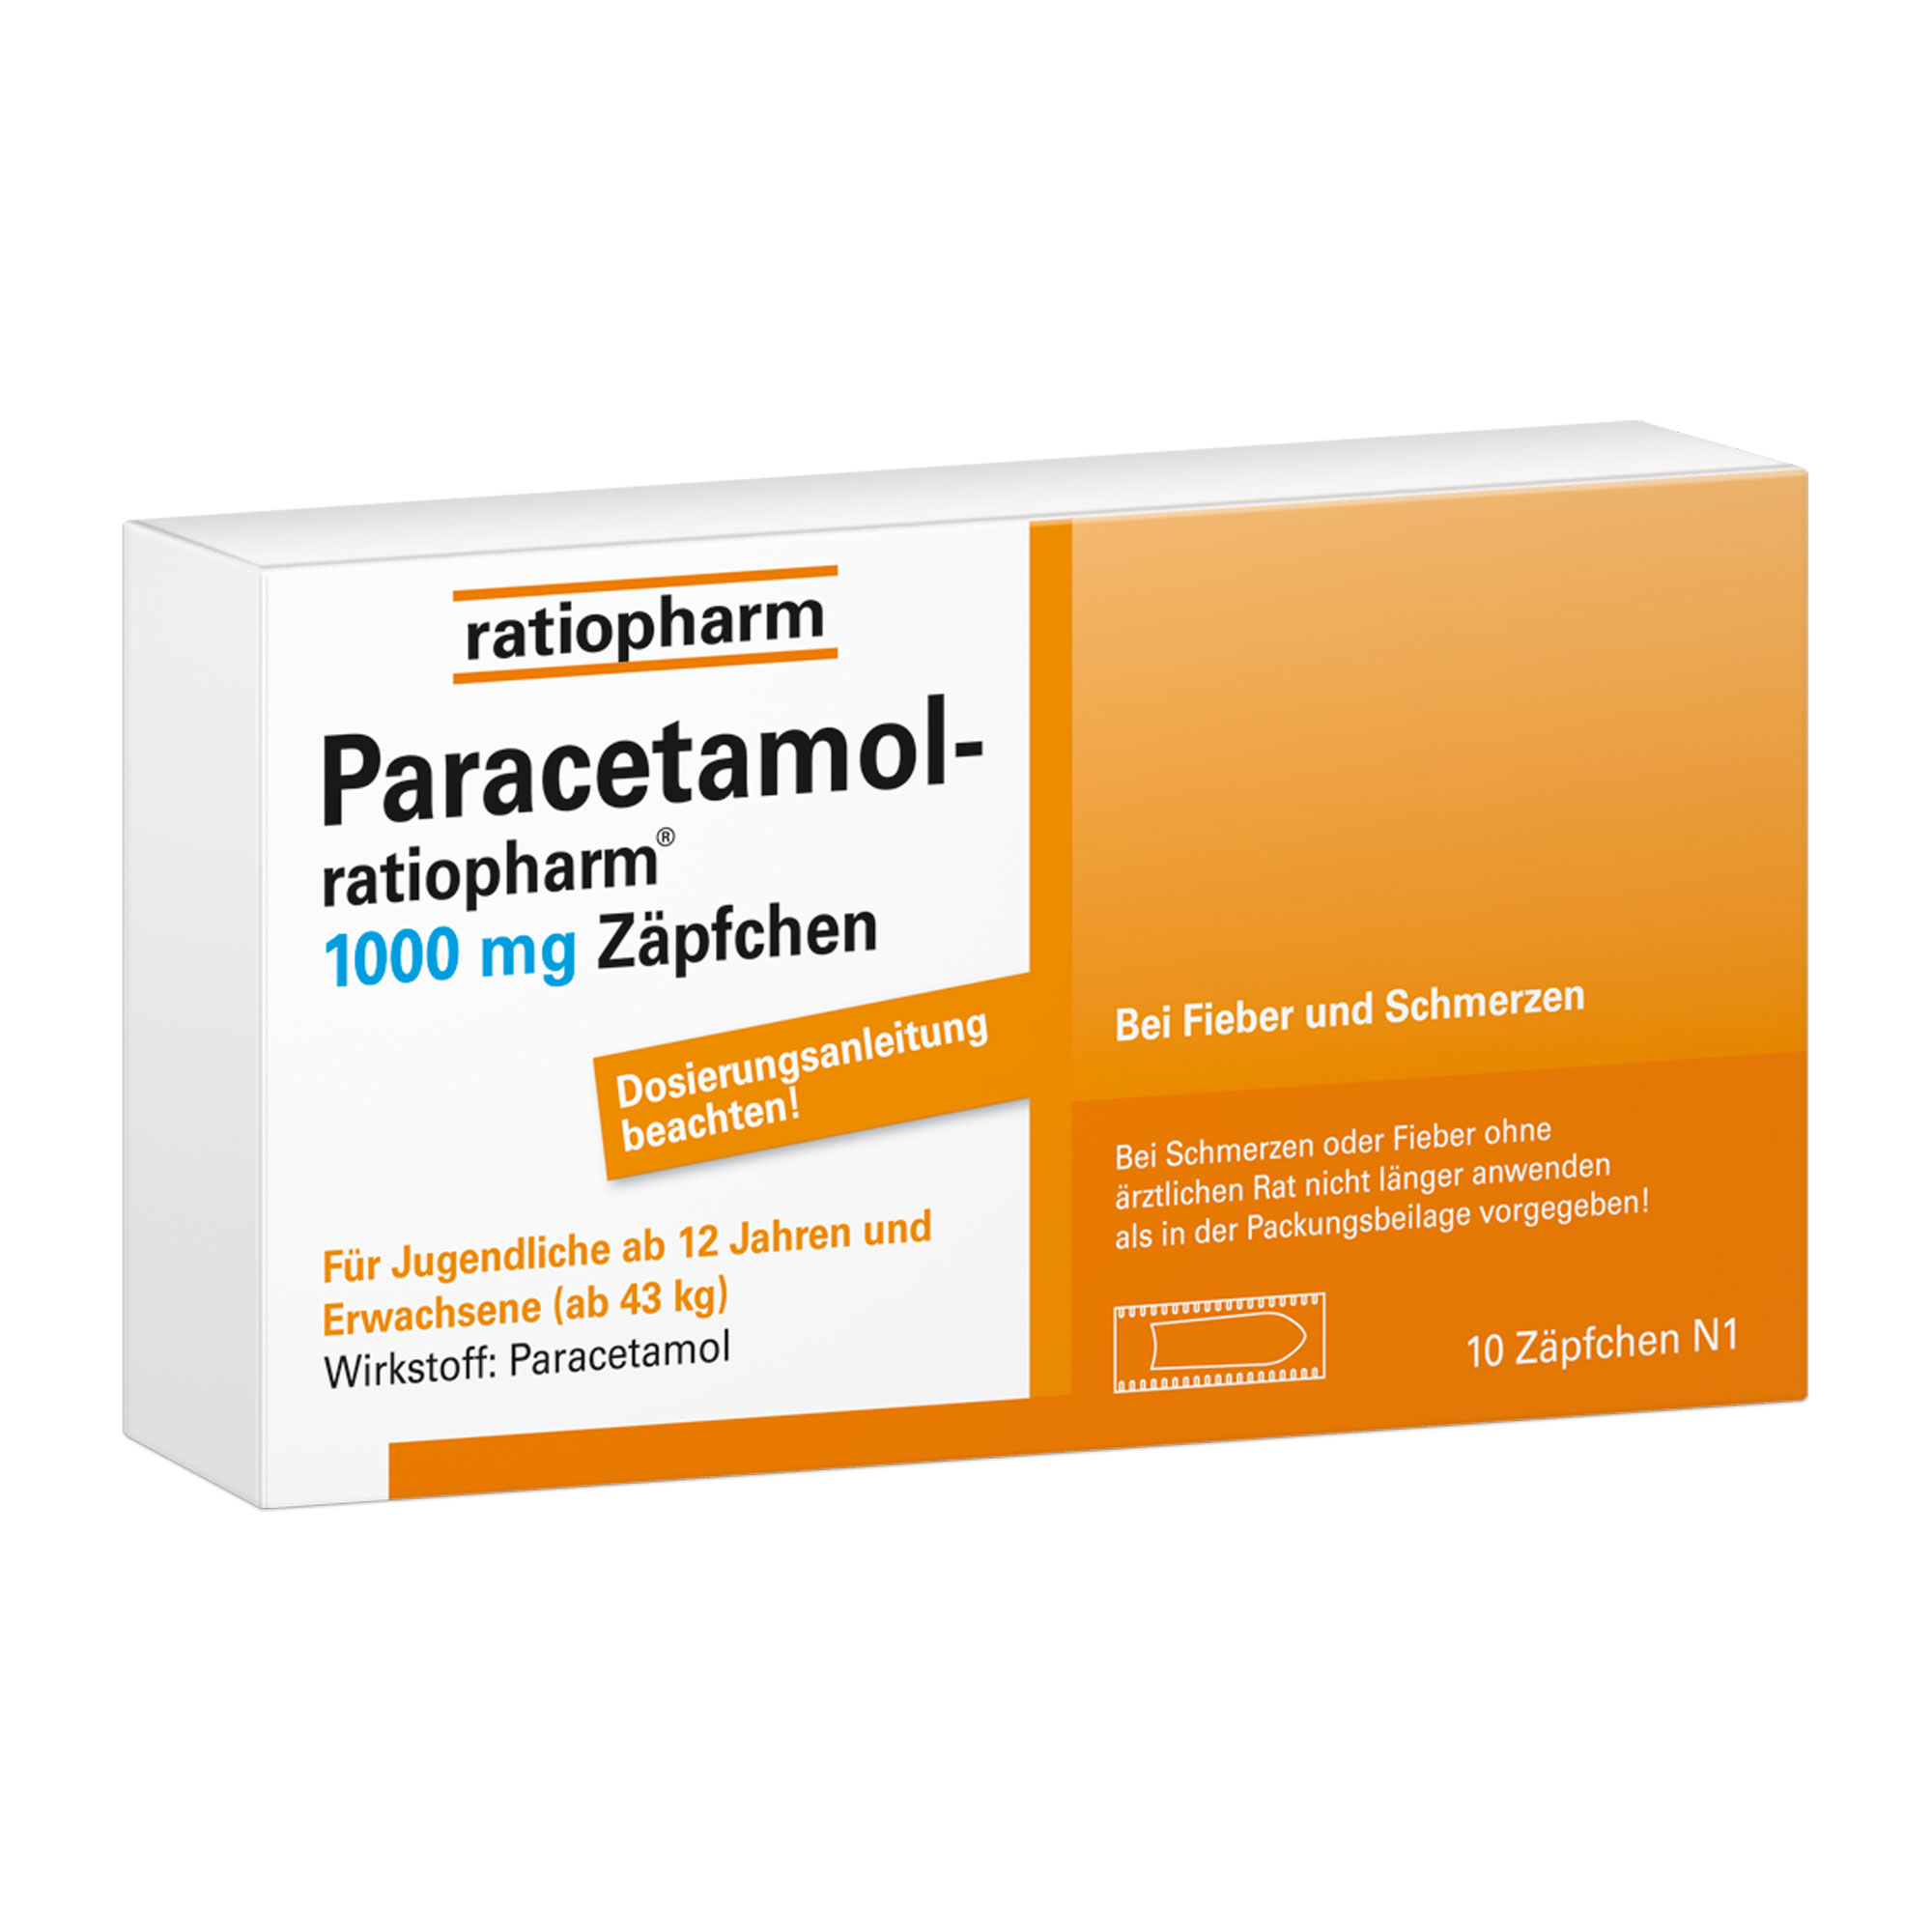 Schmerzstillende, fiebersenkende Zäpfchen mit 1.000 mg Paracetamol.